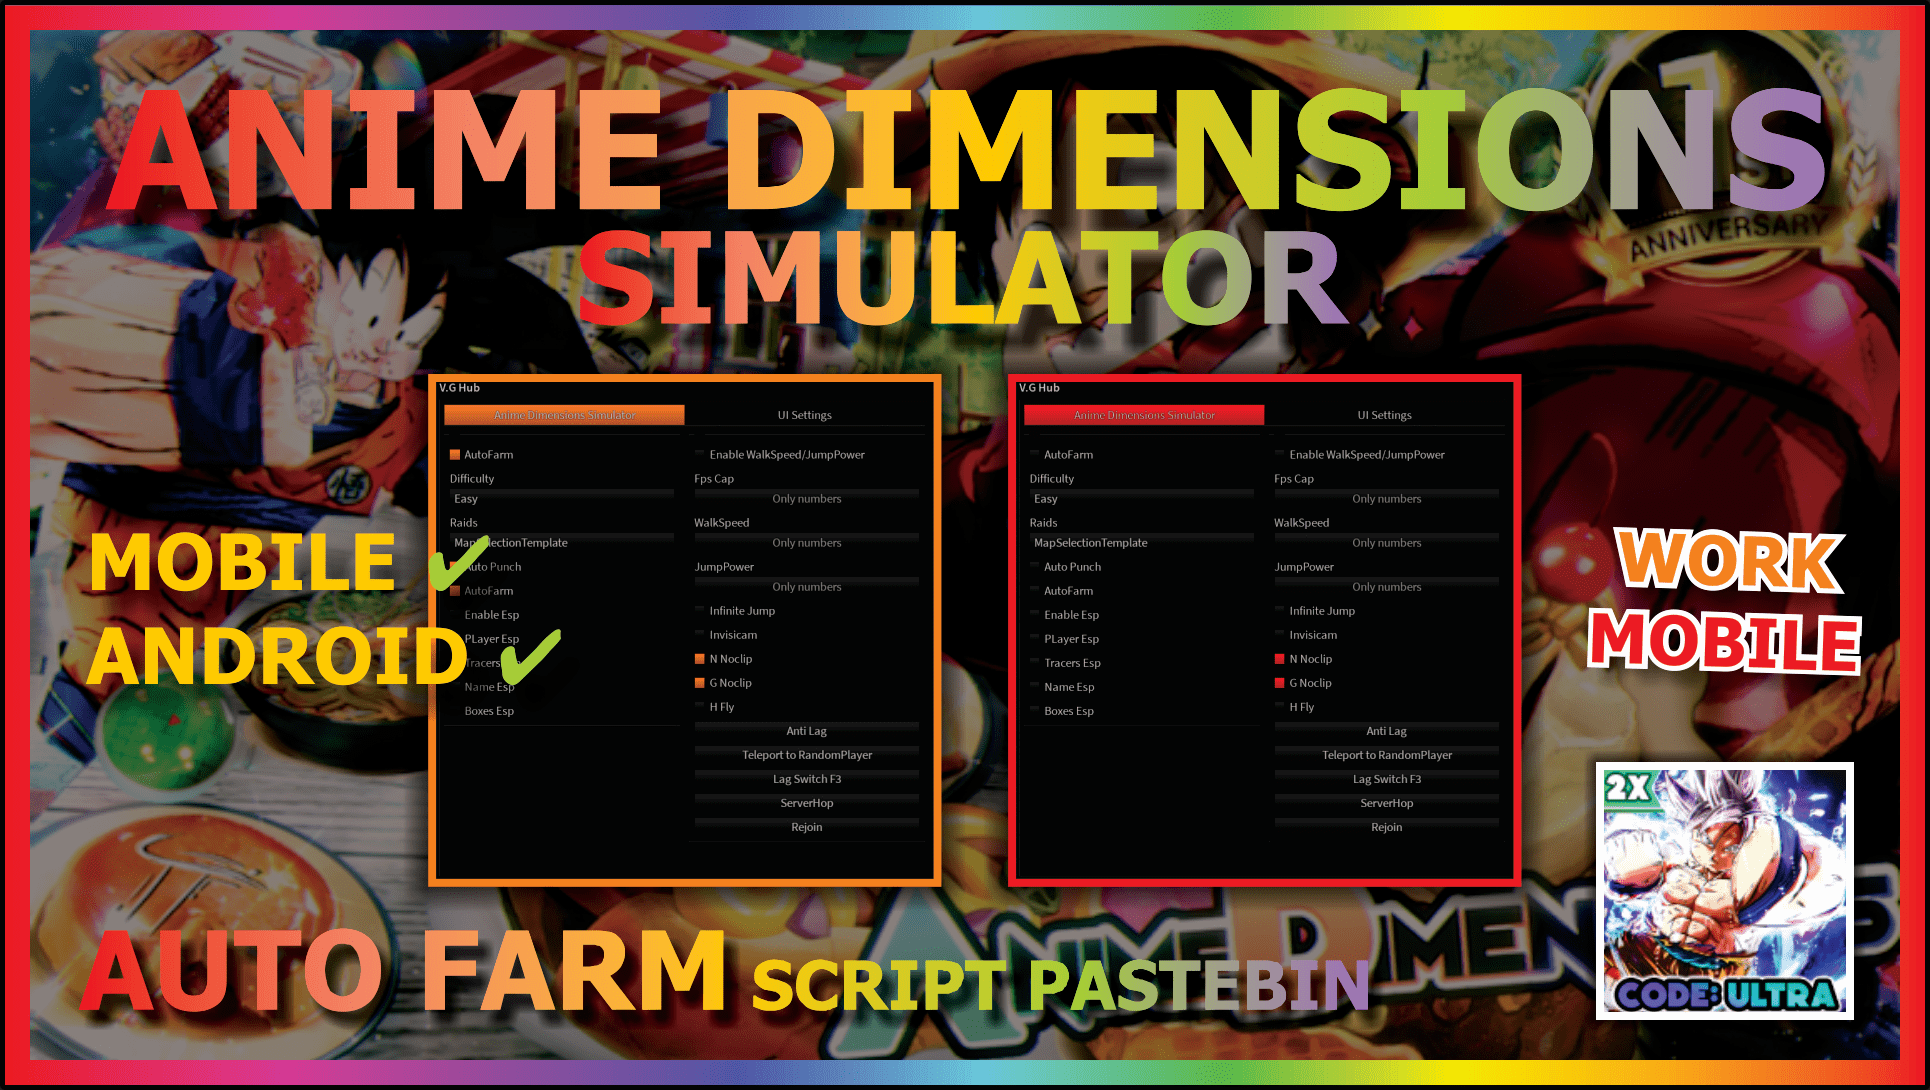 Anime Dimensions Simulator [Auto Farm/Auto Party/Auto card Sell] Scripts